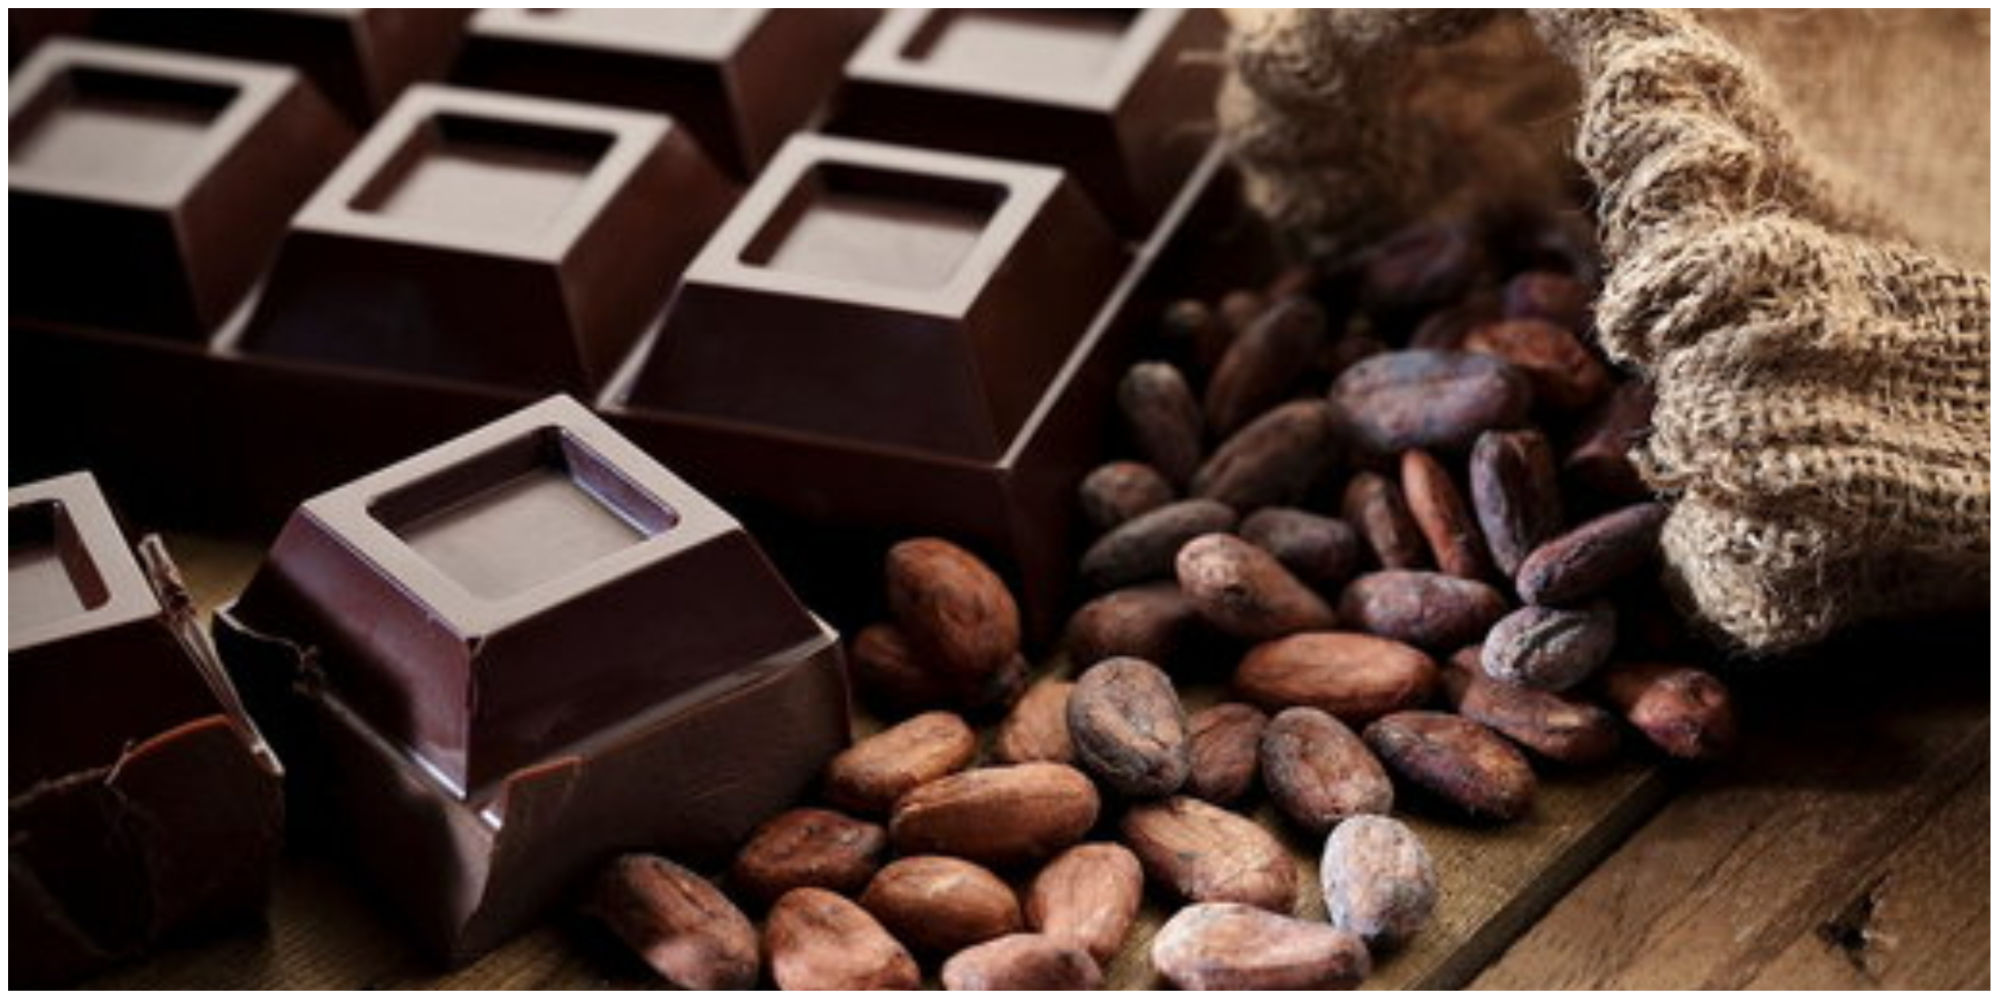 صعود عجیب و غریب قیمت کاکائو / شکلات ایرانی در طغیان قیمت ها دوام می آورد؟